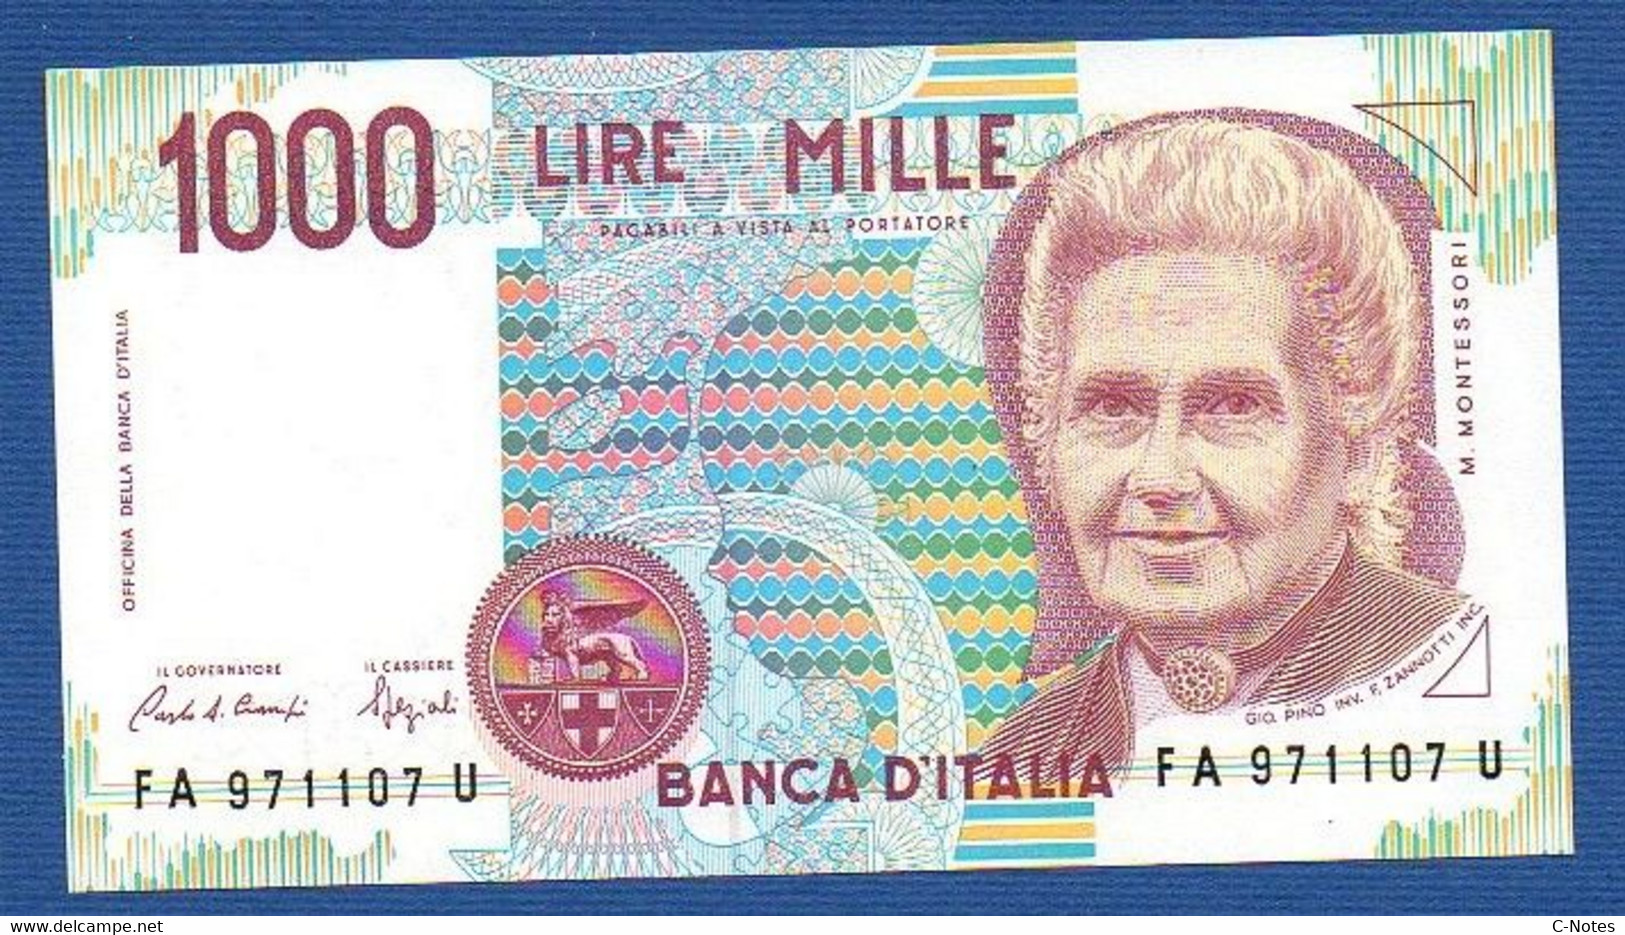 ITALY - P.114a – 1.000 LIRE M. Montessori 03.10.1990  UNC, Serie FA 971107 U - 1000 Lire